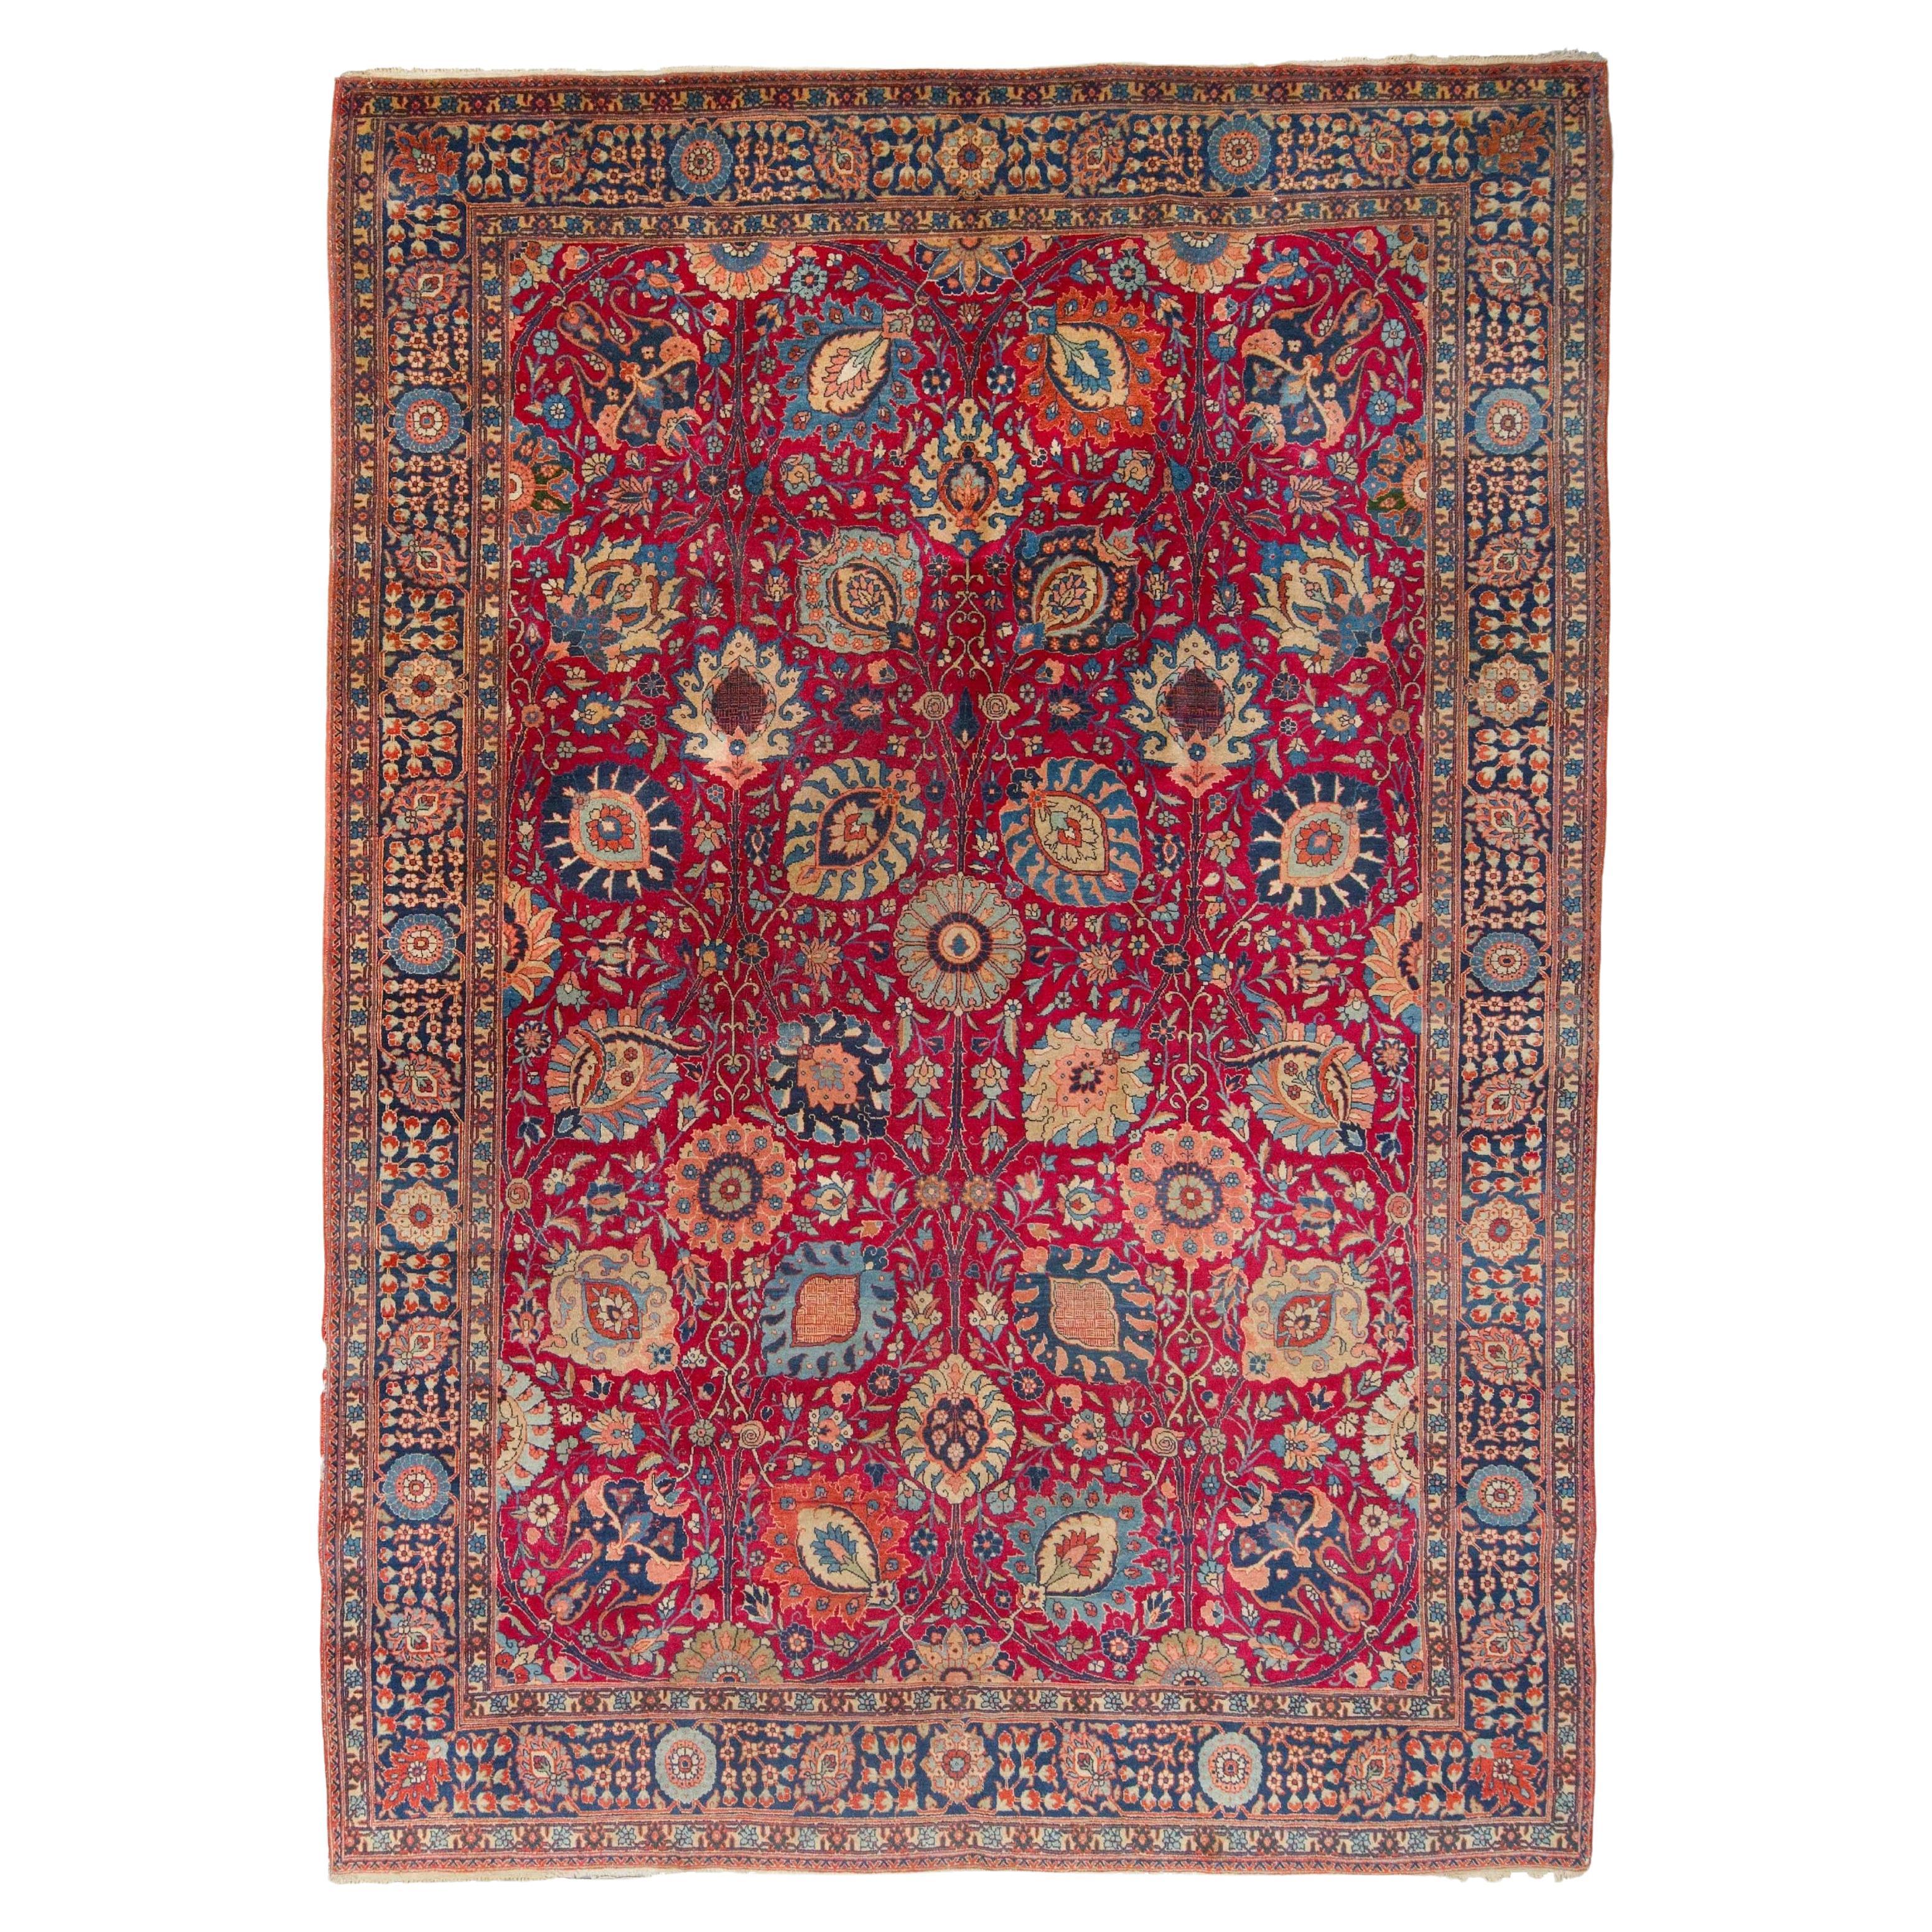 Antique Tabriz Rug - Late of 19th Century Tebriz Rug, Antique Carpet For Sale